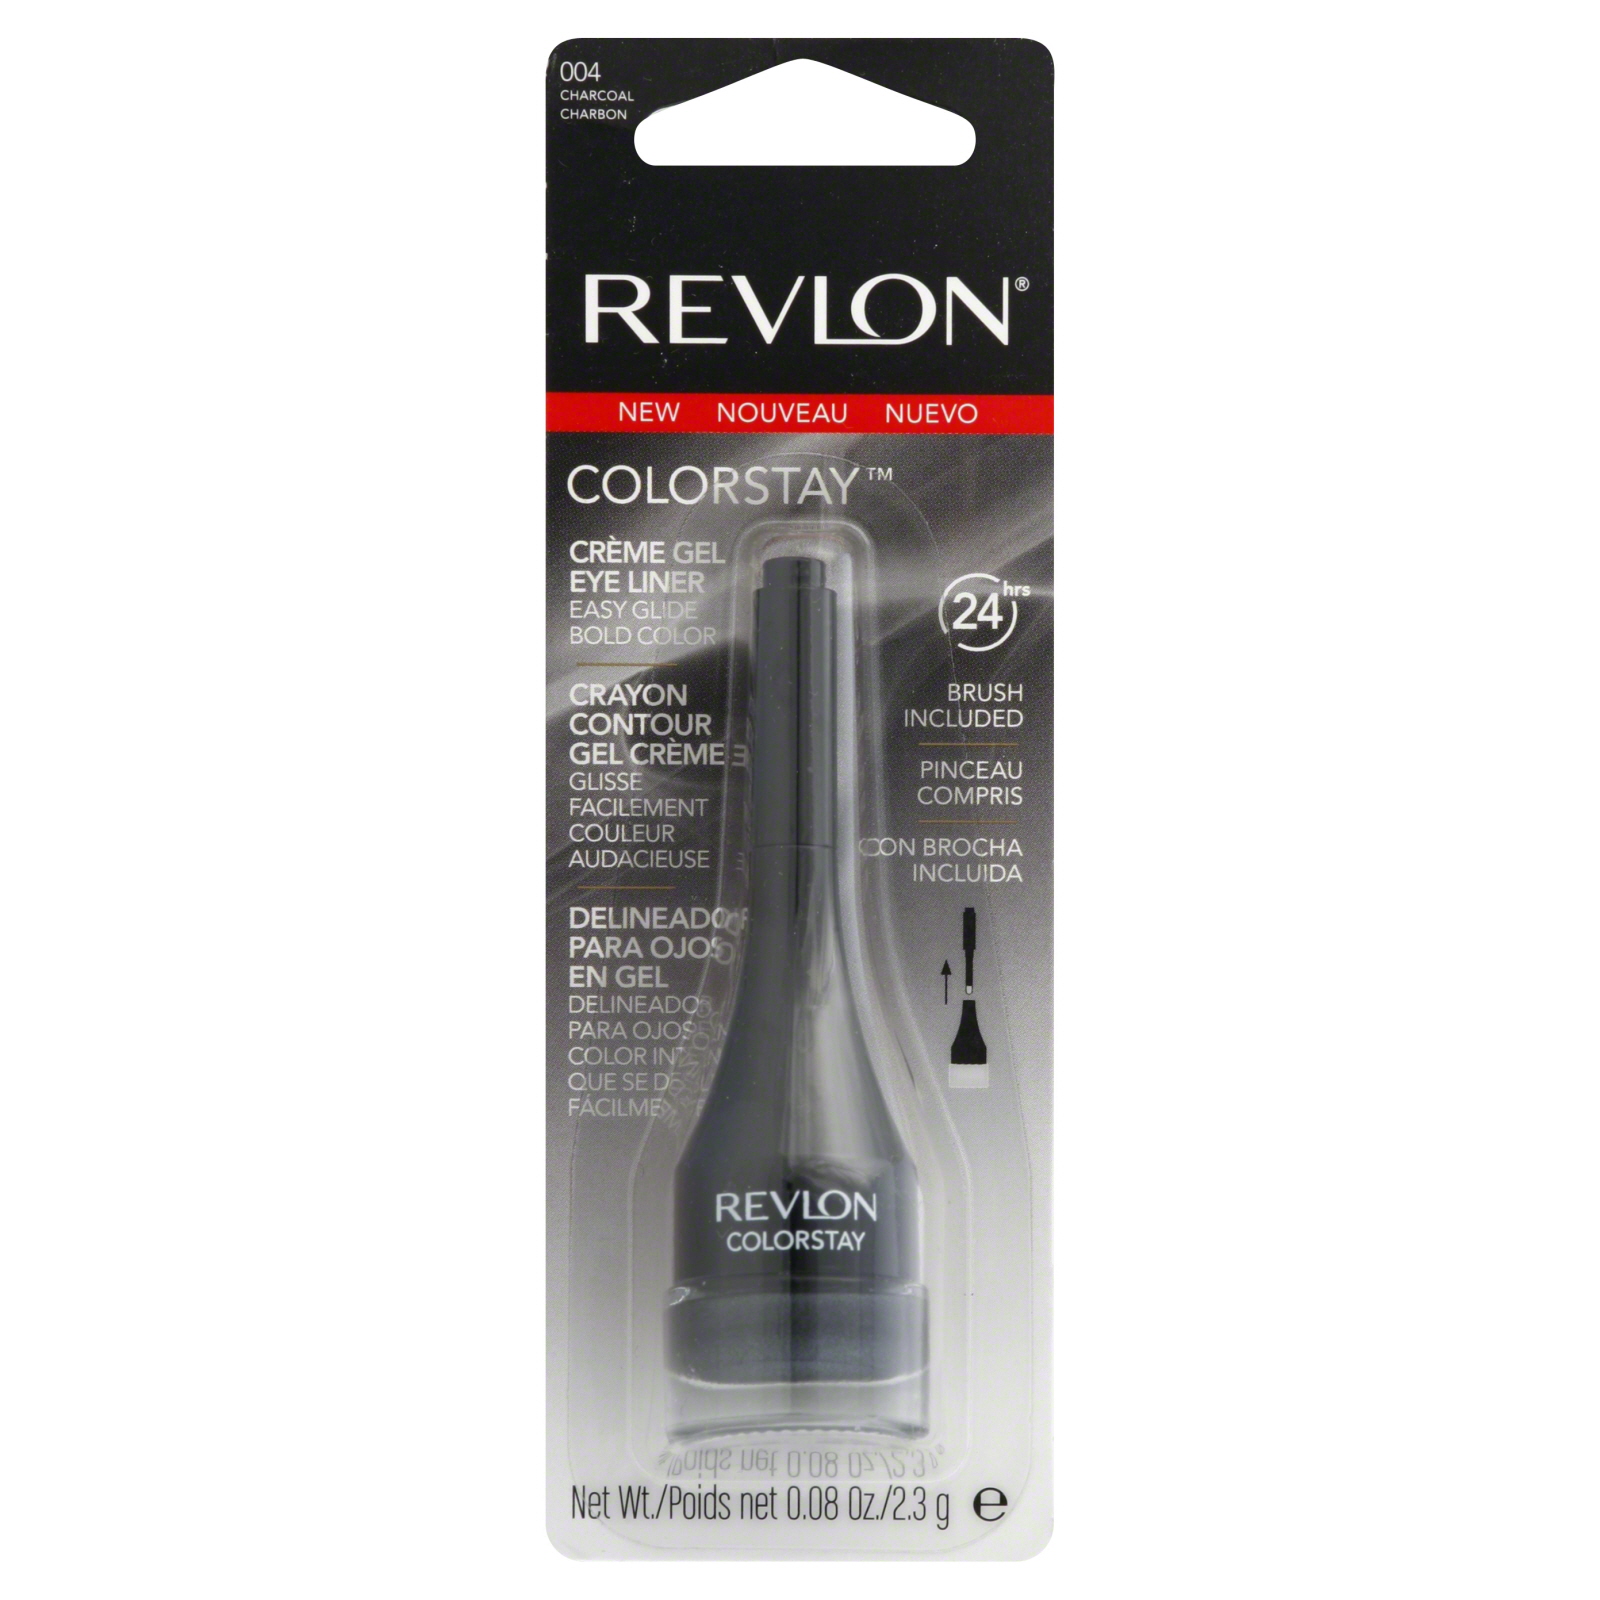 Revlon Colorstay Creme Gel Eye Liner Charcoal .08 fl oz